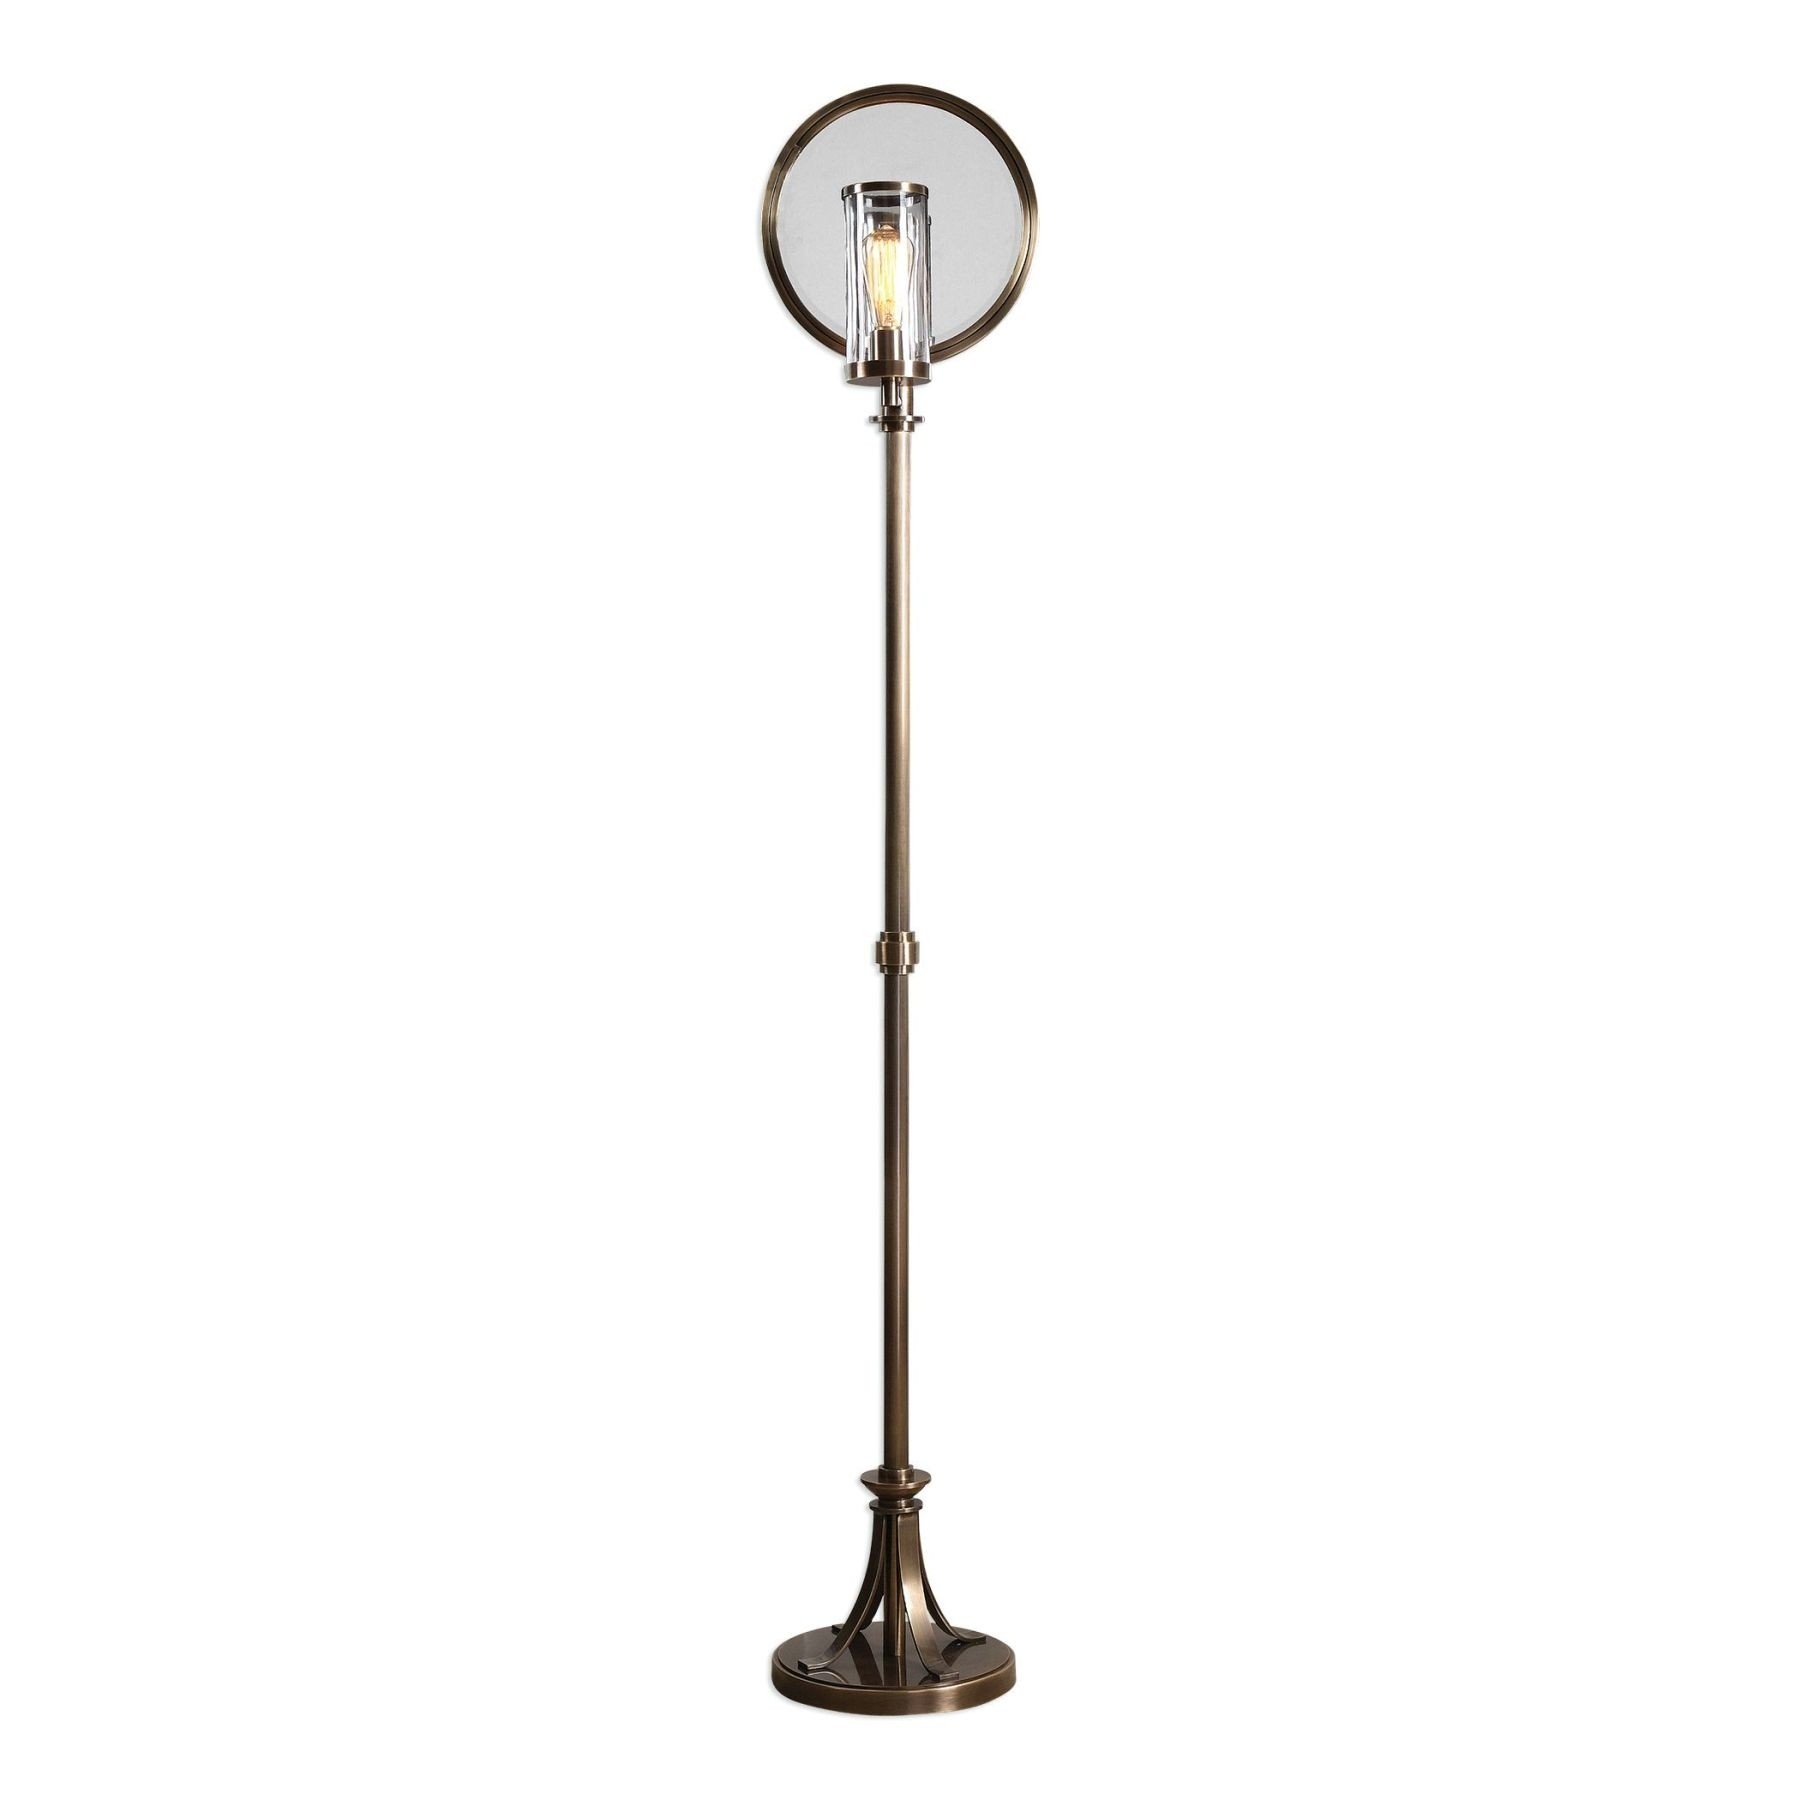 Fireplace Lamp Best Of Blanchet Industrial Floor Lamp